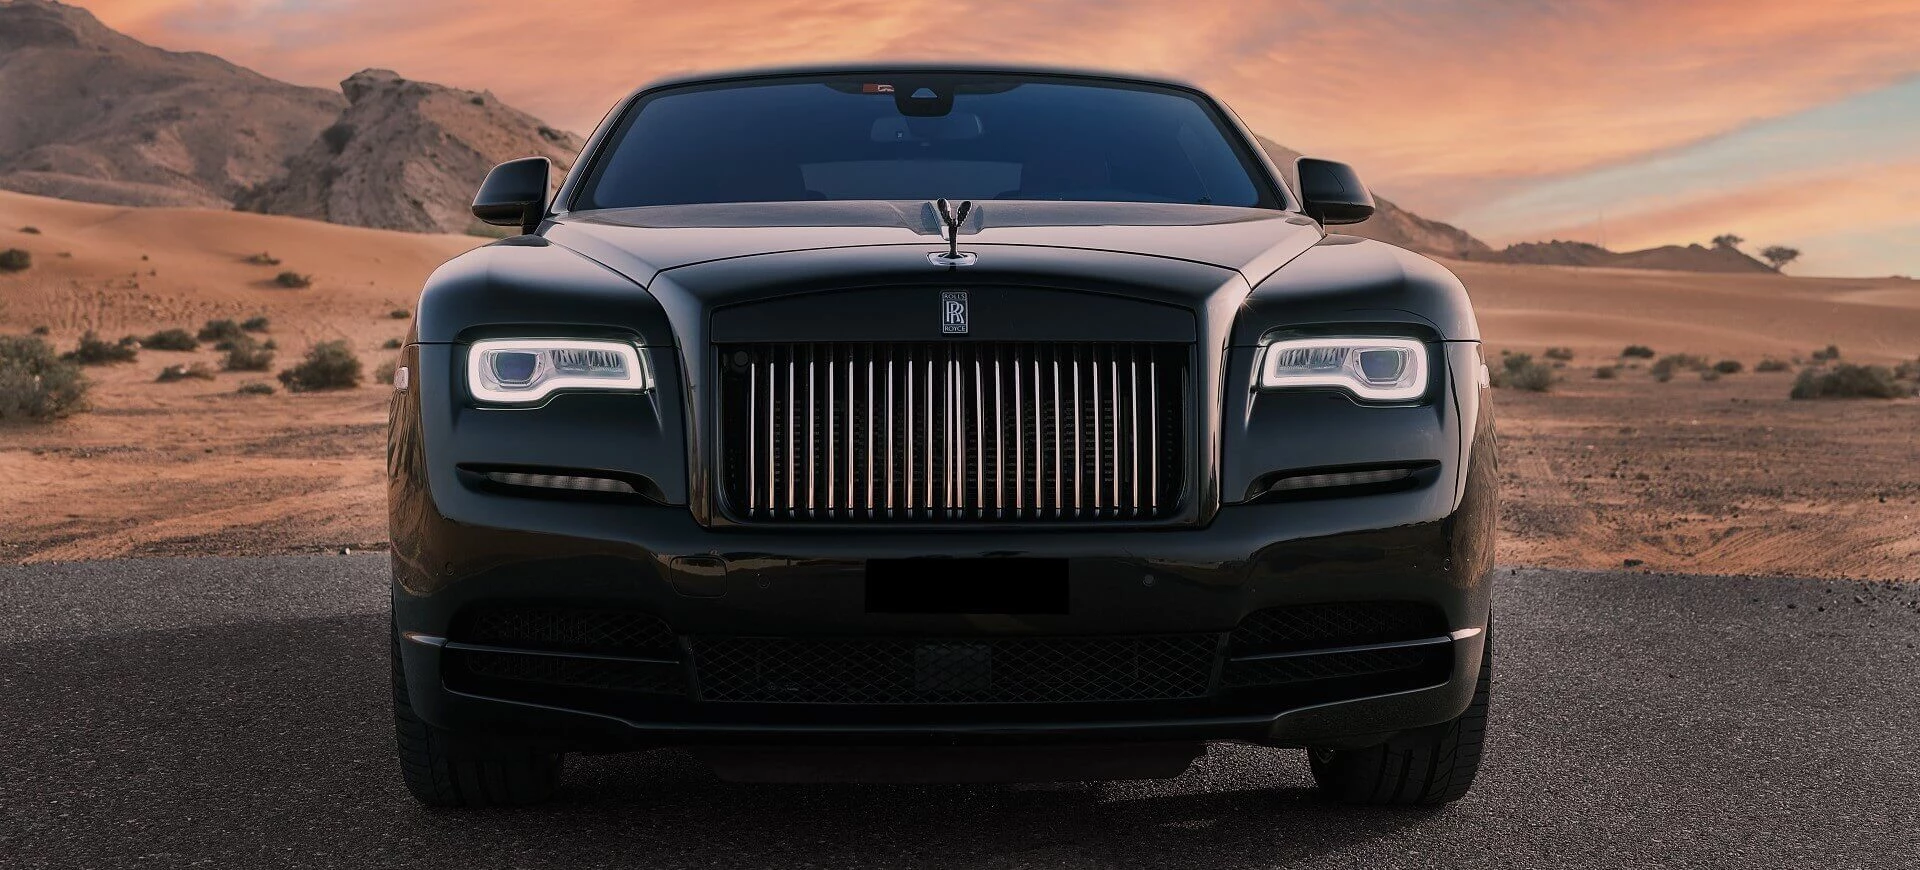 Rolls Royce Wraith huren in Dubai